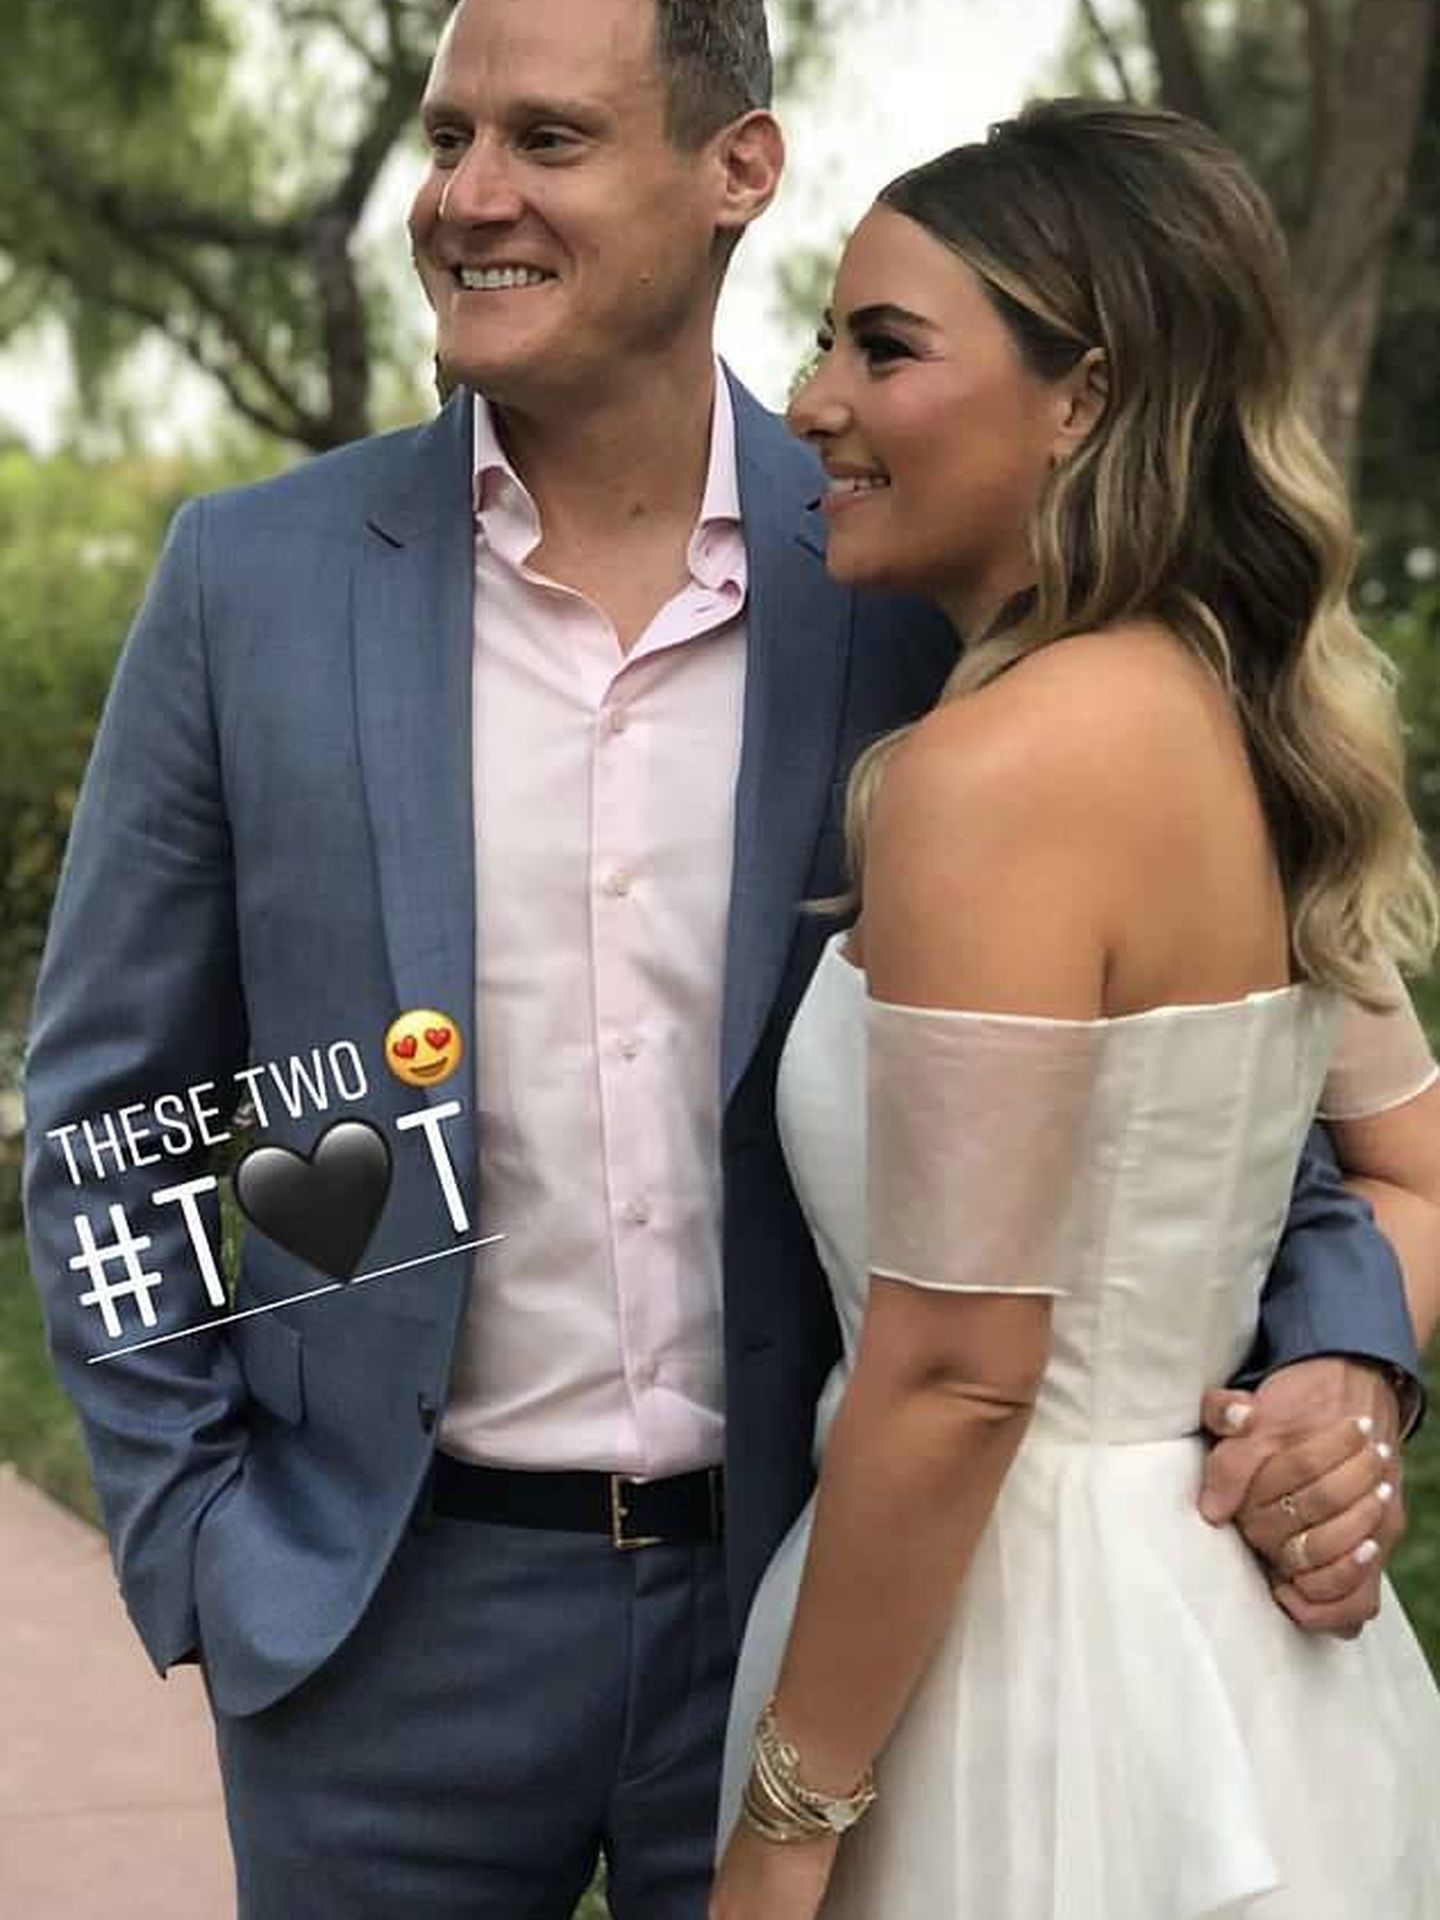 Los invitados de la boda subieron esta foto a internet. (Instagram)